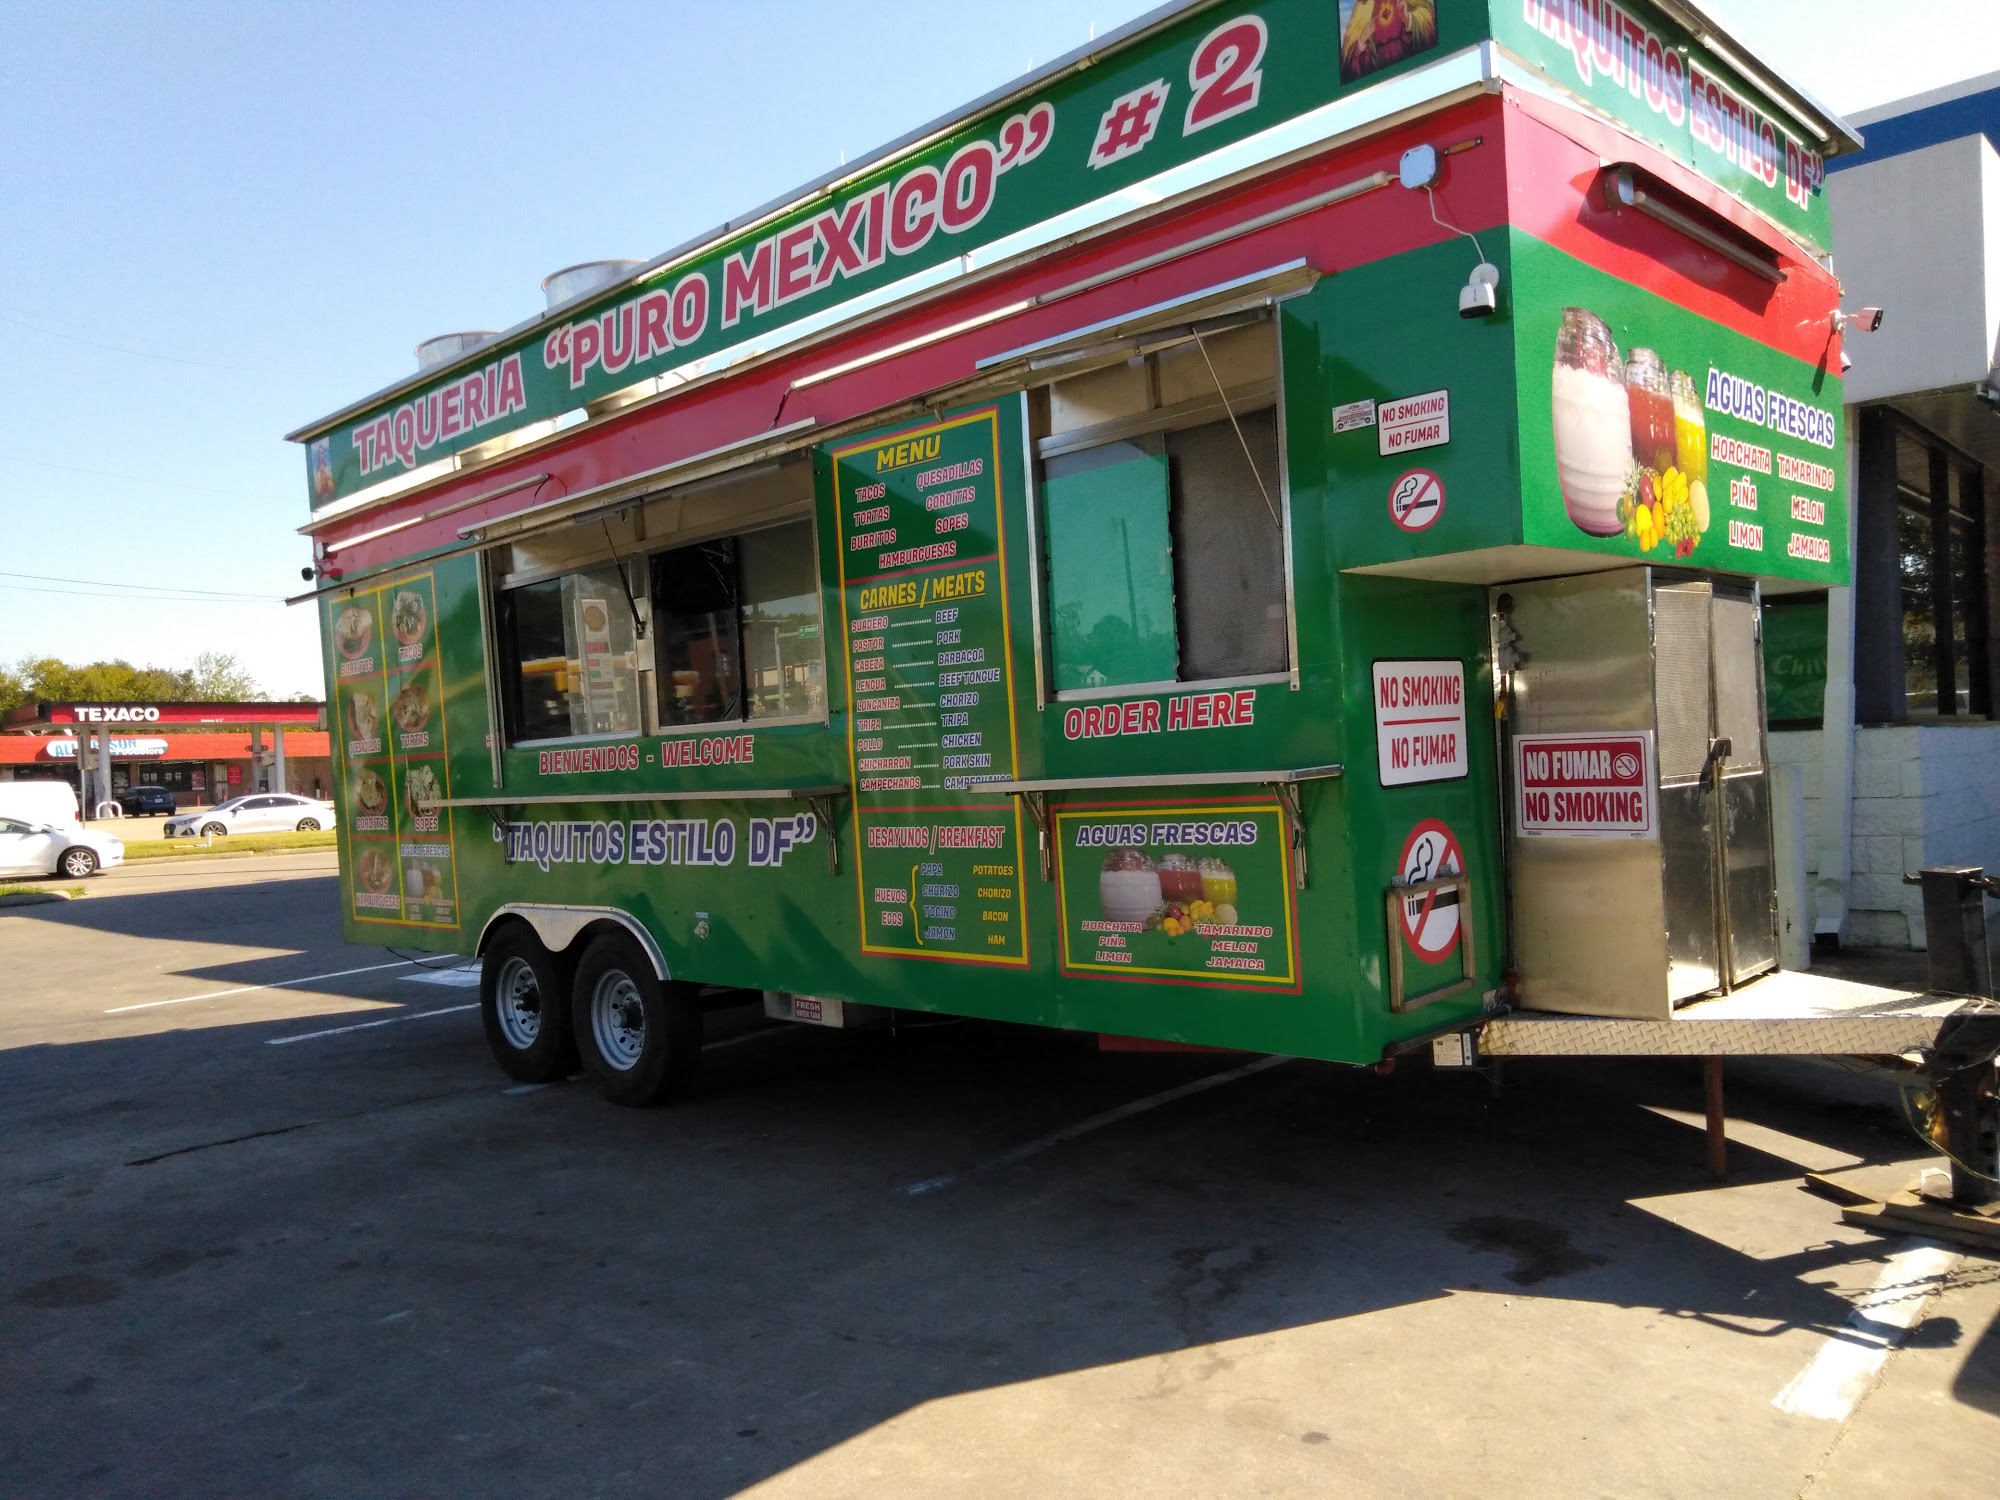 Taqueria Puro Mexico (Food Truck)